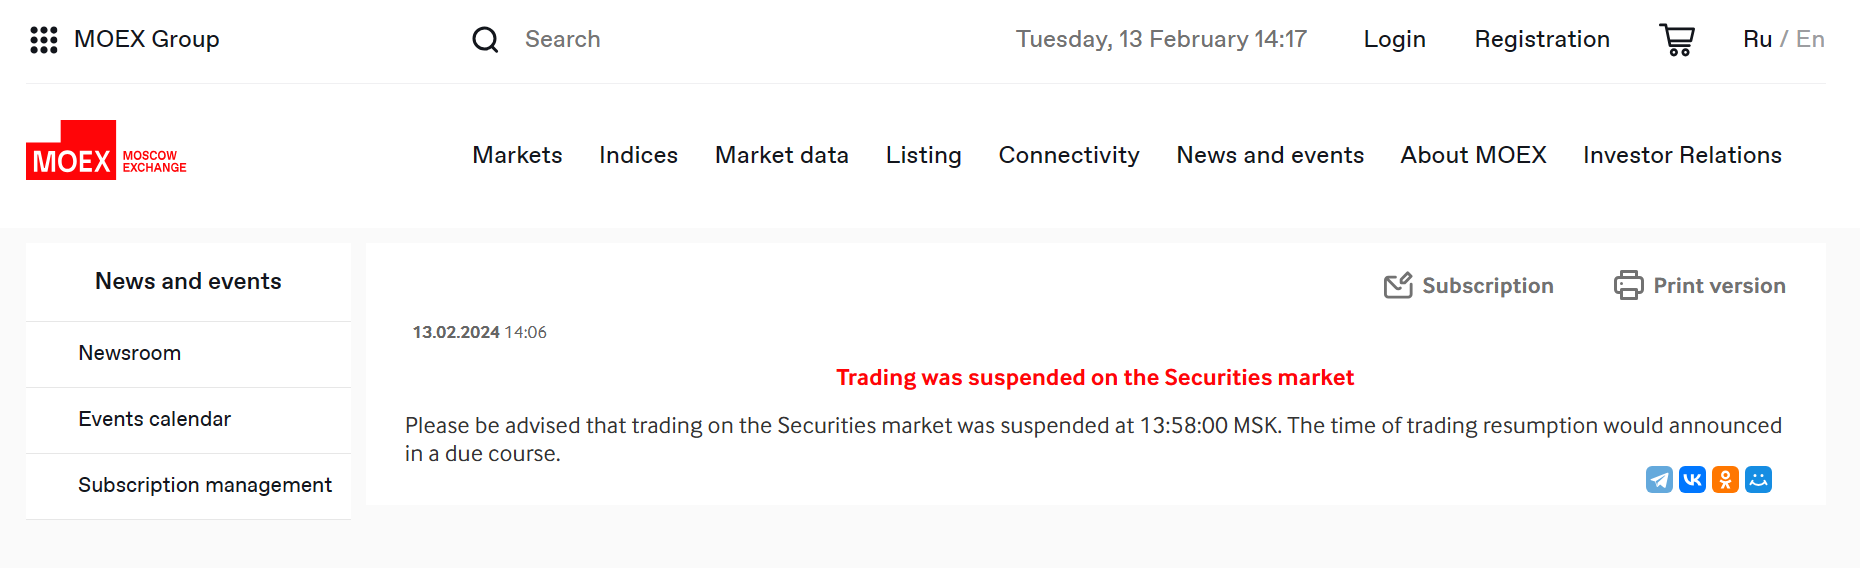 莫斯科交易所股票市场交易已暂停